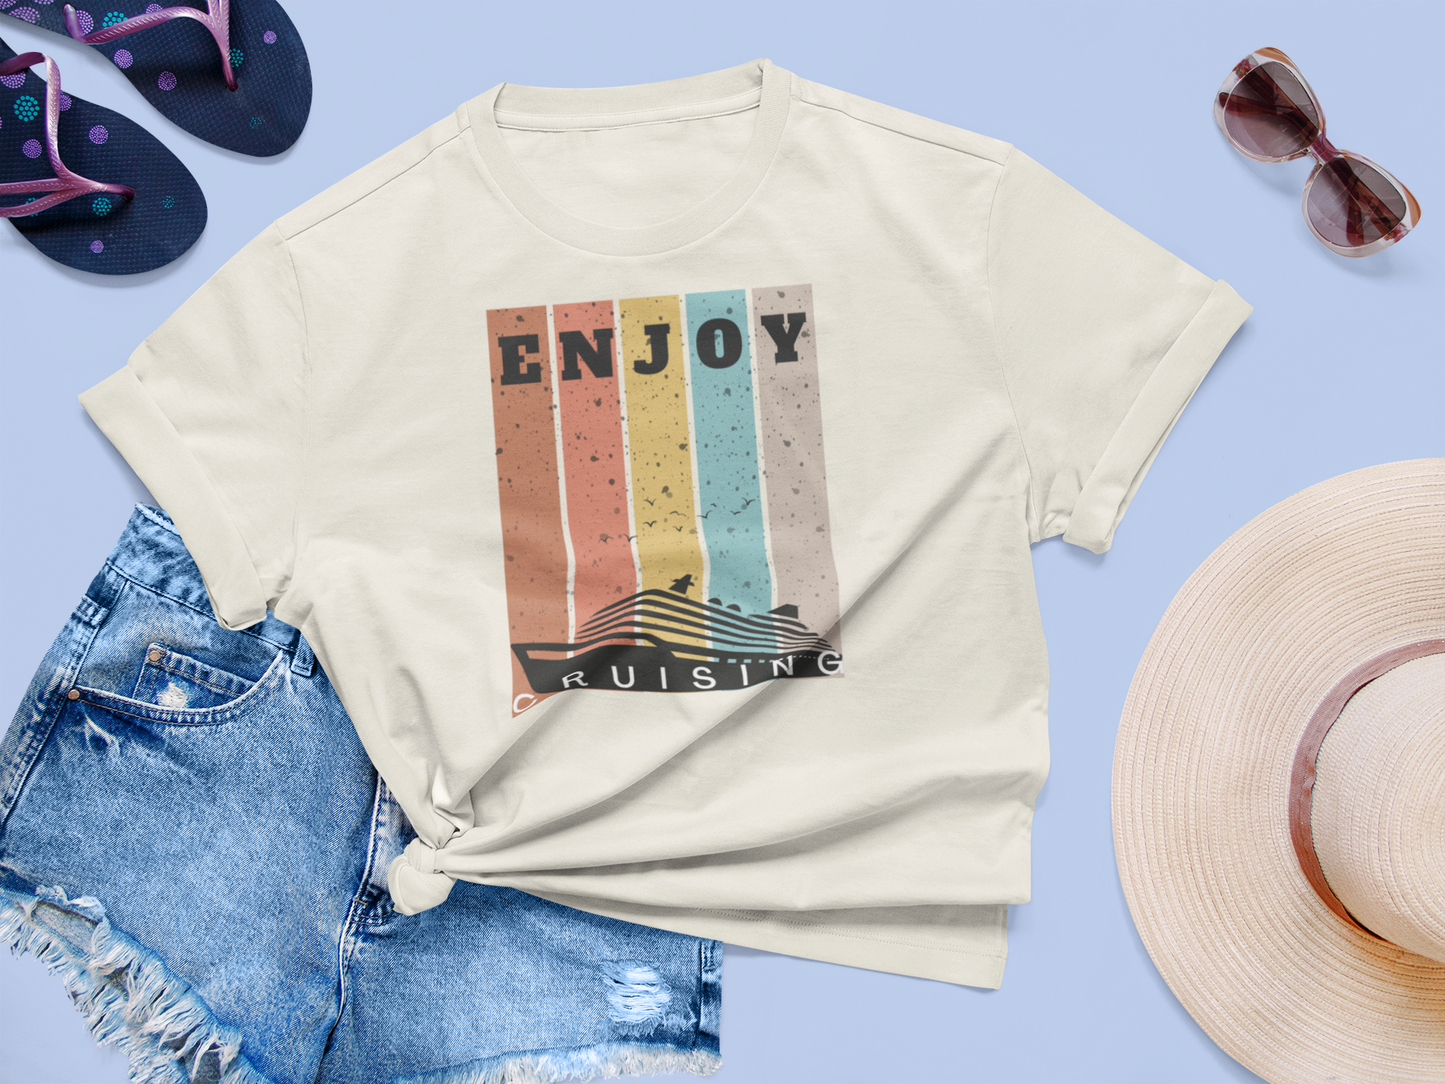 "Enjoy Cruising" Softstyle T-Shirt